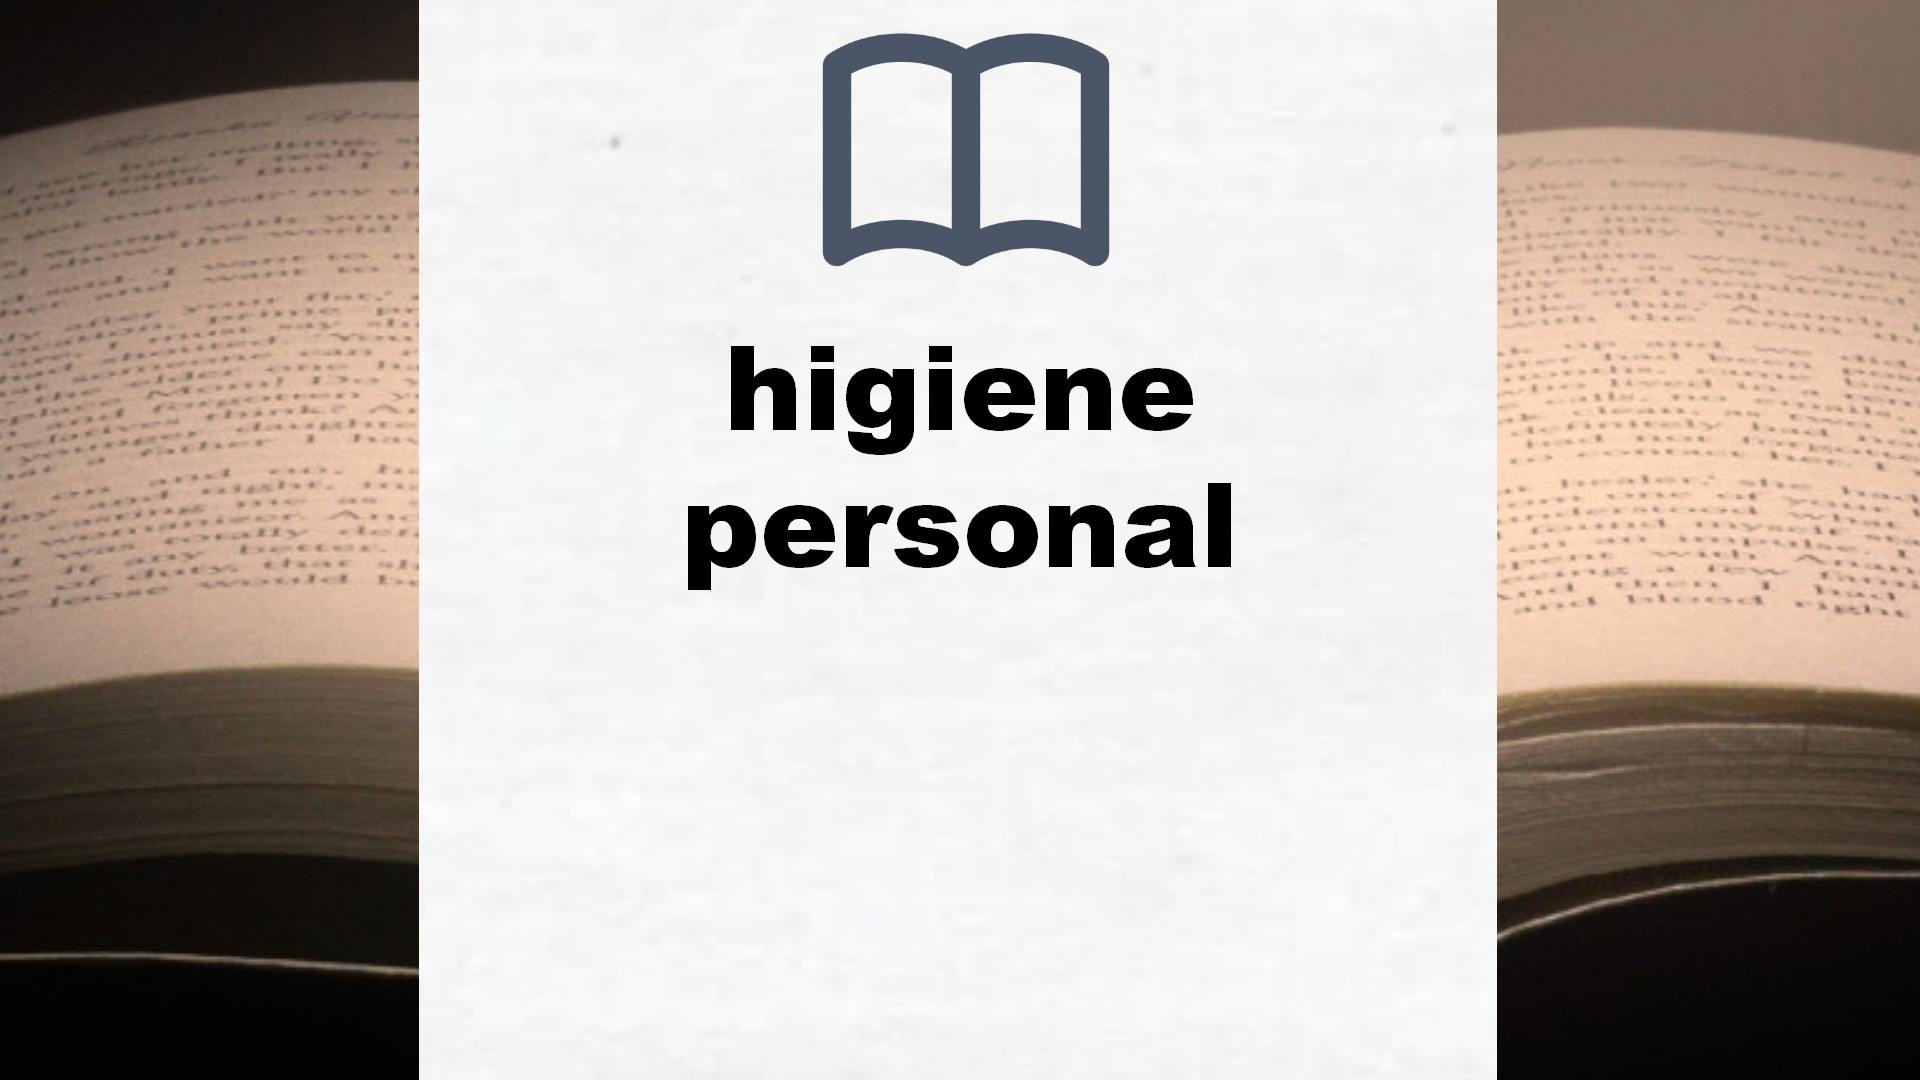 Libros sobre higiene personal